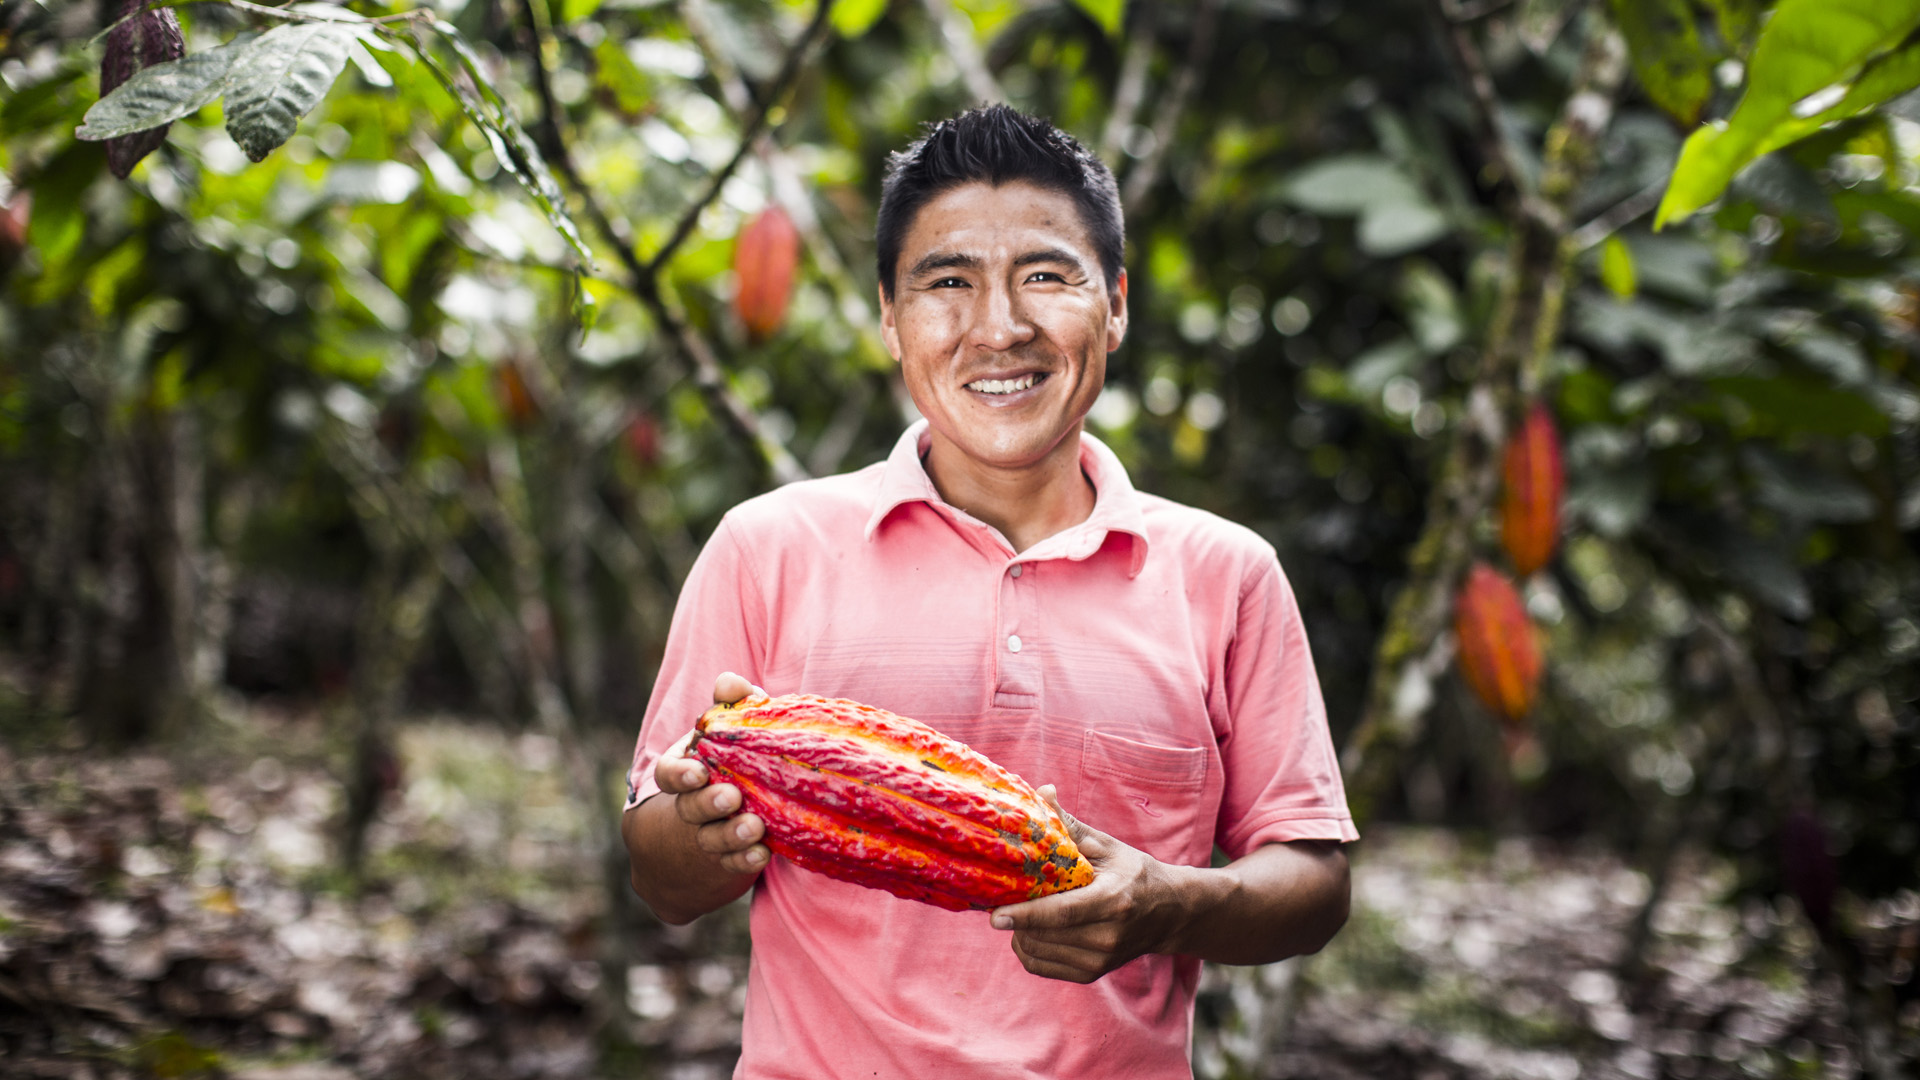 Willy Gonzalez baute früher die Drogenpflanze Koka an. Heute ist er erfolgreicher Kakaobauer im peruanischen Tingo María.